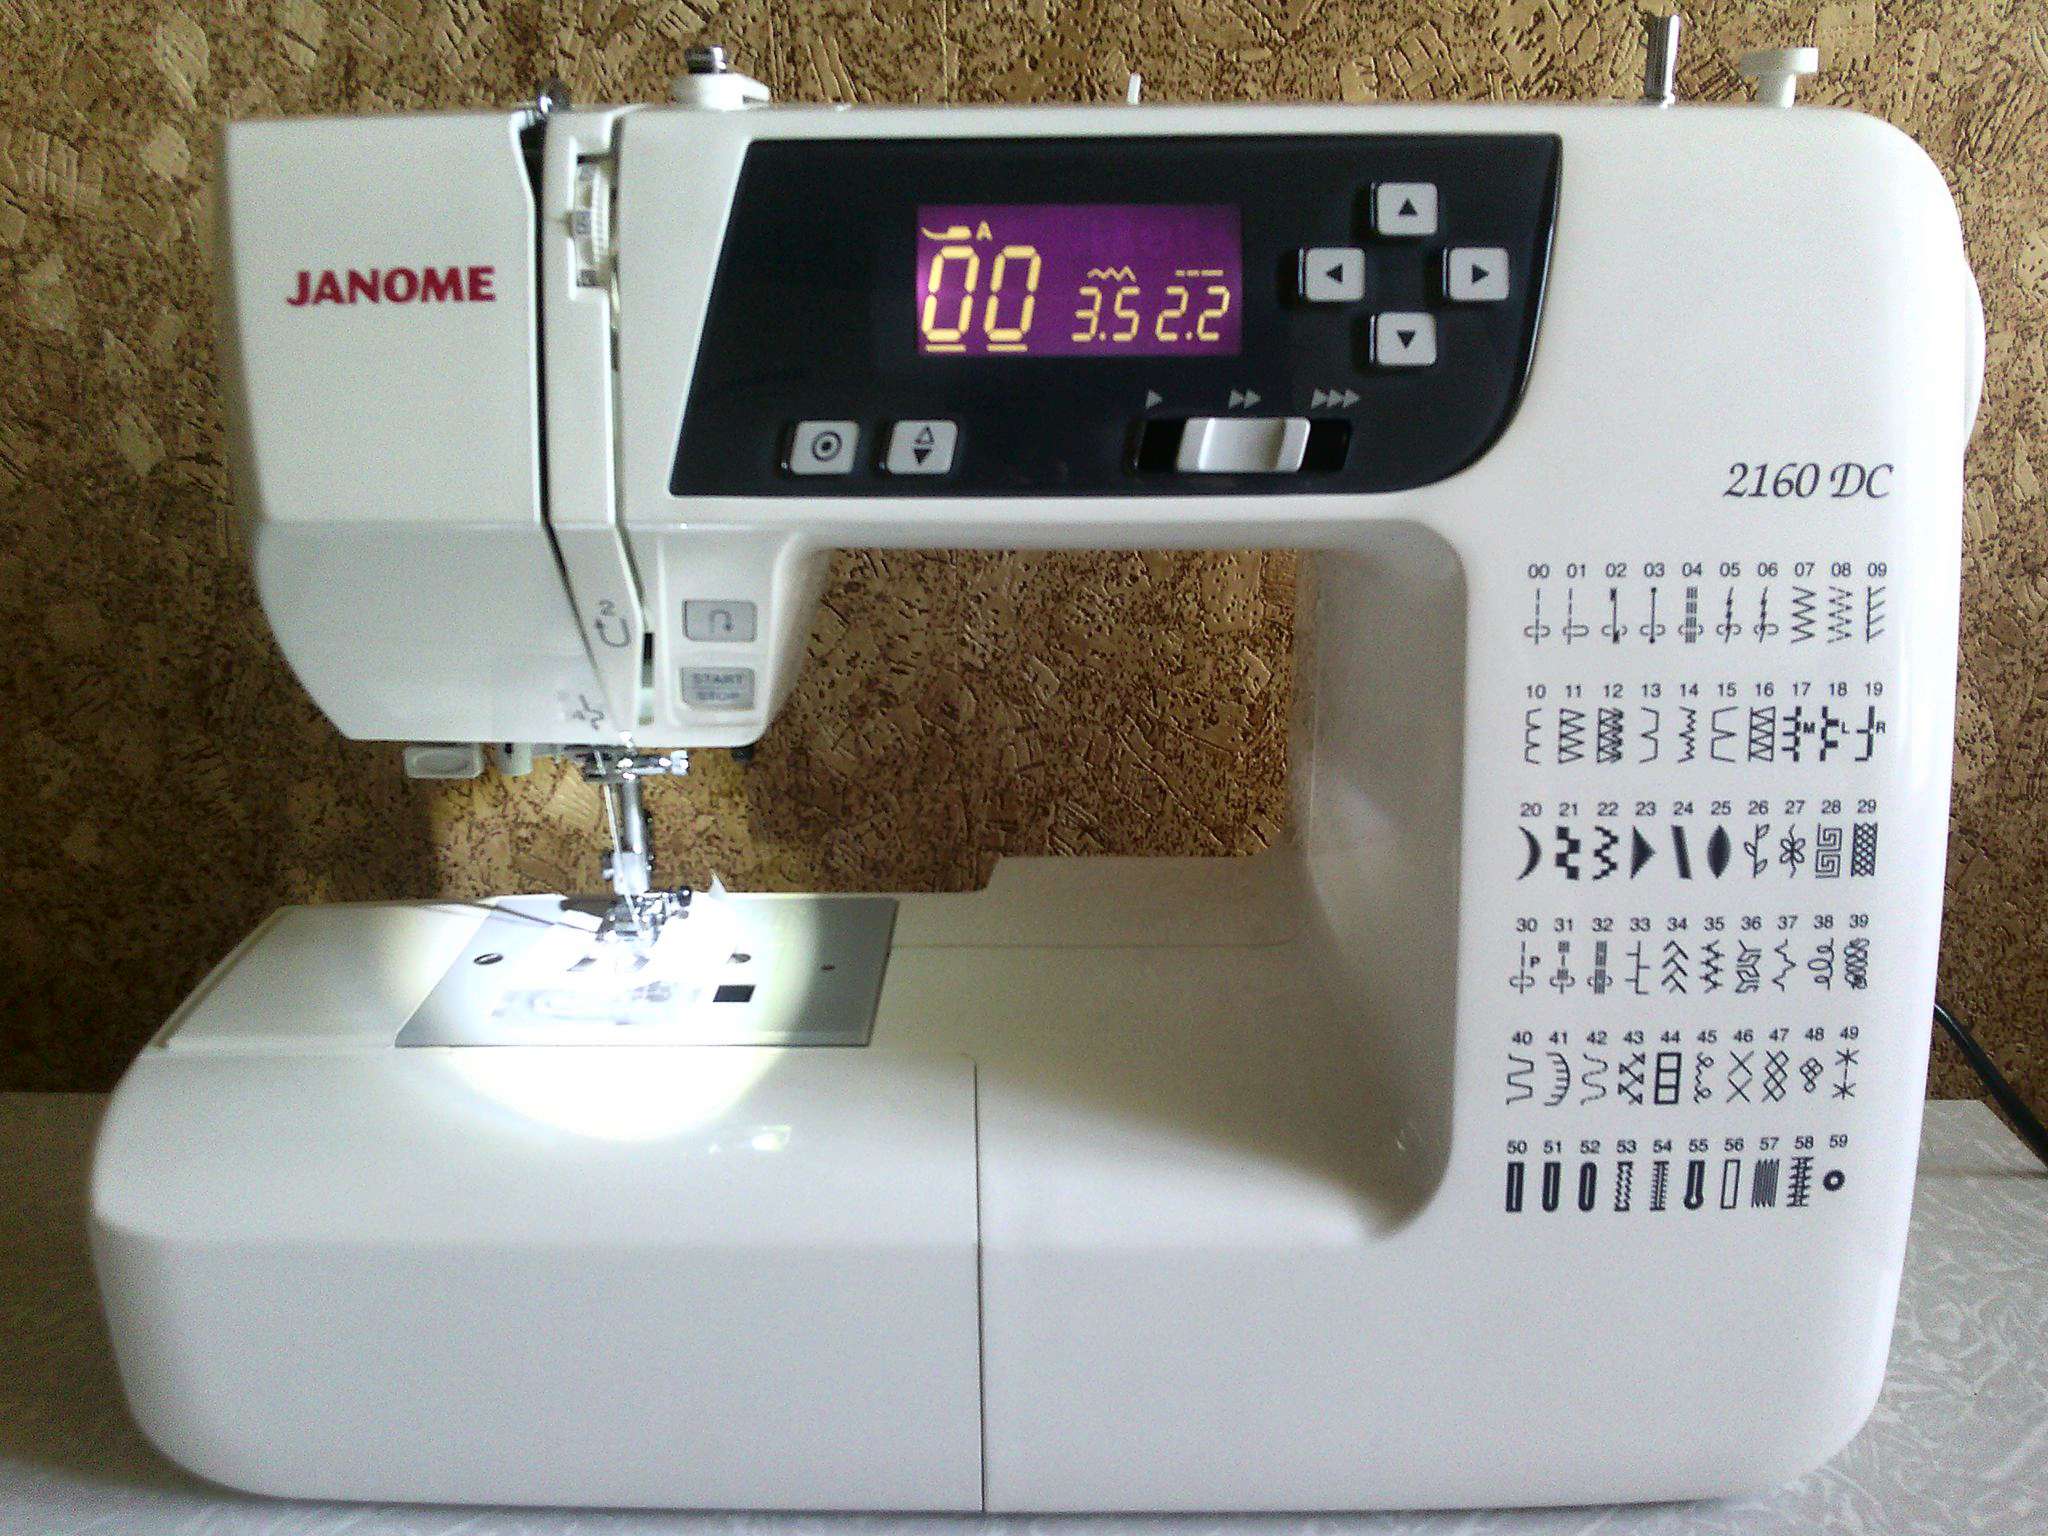 Janome 2160 dc. Швейная машинка Janome 2160 DC. Швейная машина Janome DC 2160 комплектация. Швейная машинка Janome 2160 DC фот. Японская швейная машинка Janome 2014.